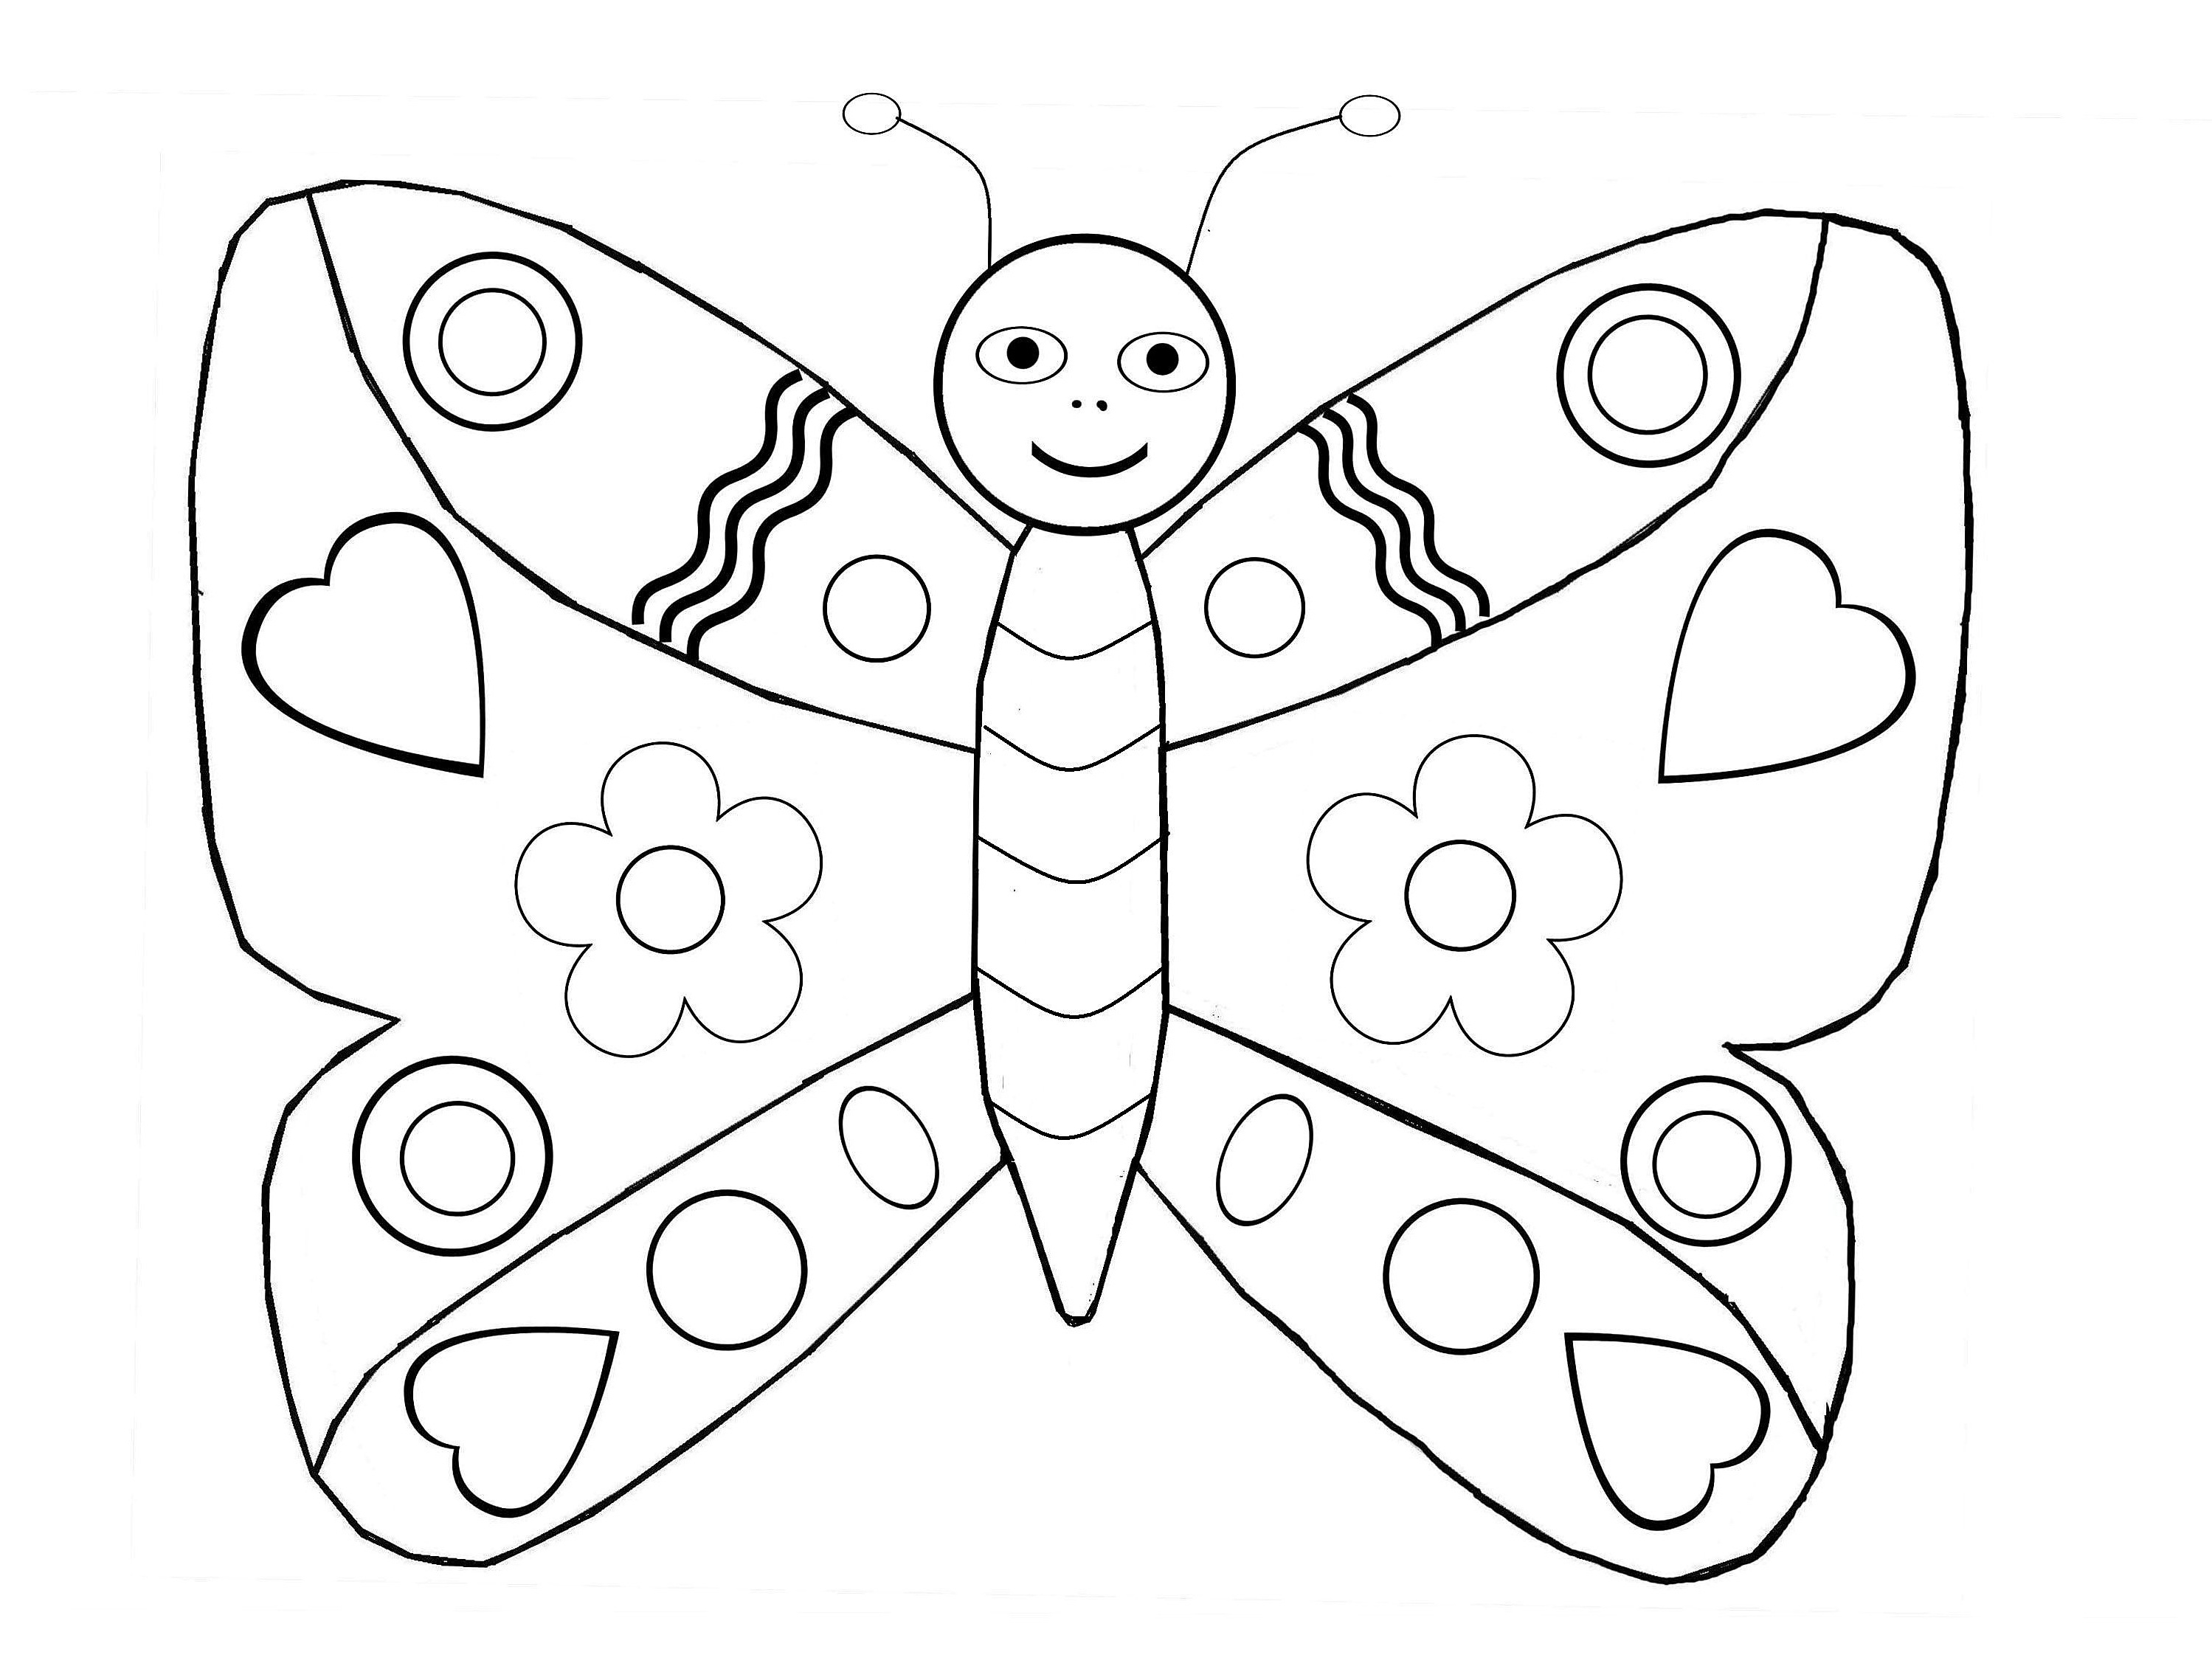 Dessin Enfant à Imprimer Bestof Collection Papillons 4 Coloriage De Papillons Coloriages Pour Enfants